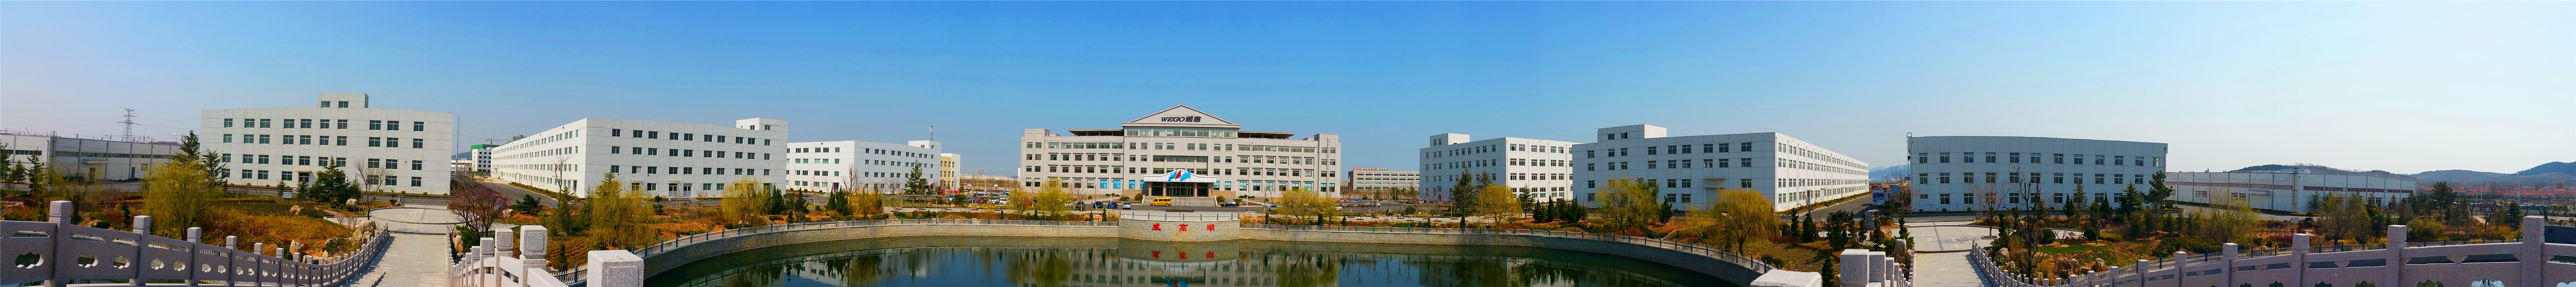 威高输血技术装备公司参加2019年天津市医学会临床输血学术年会